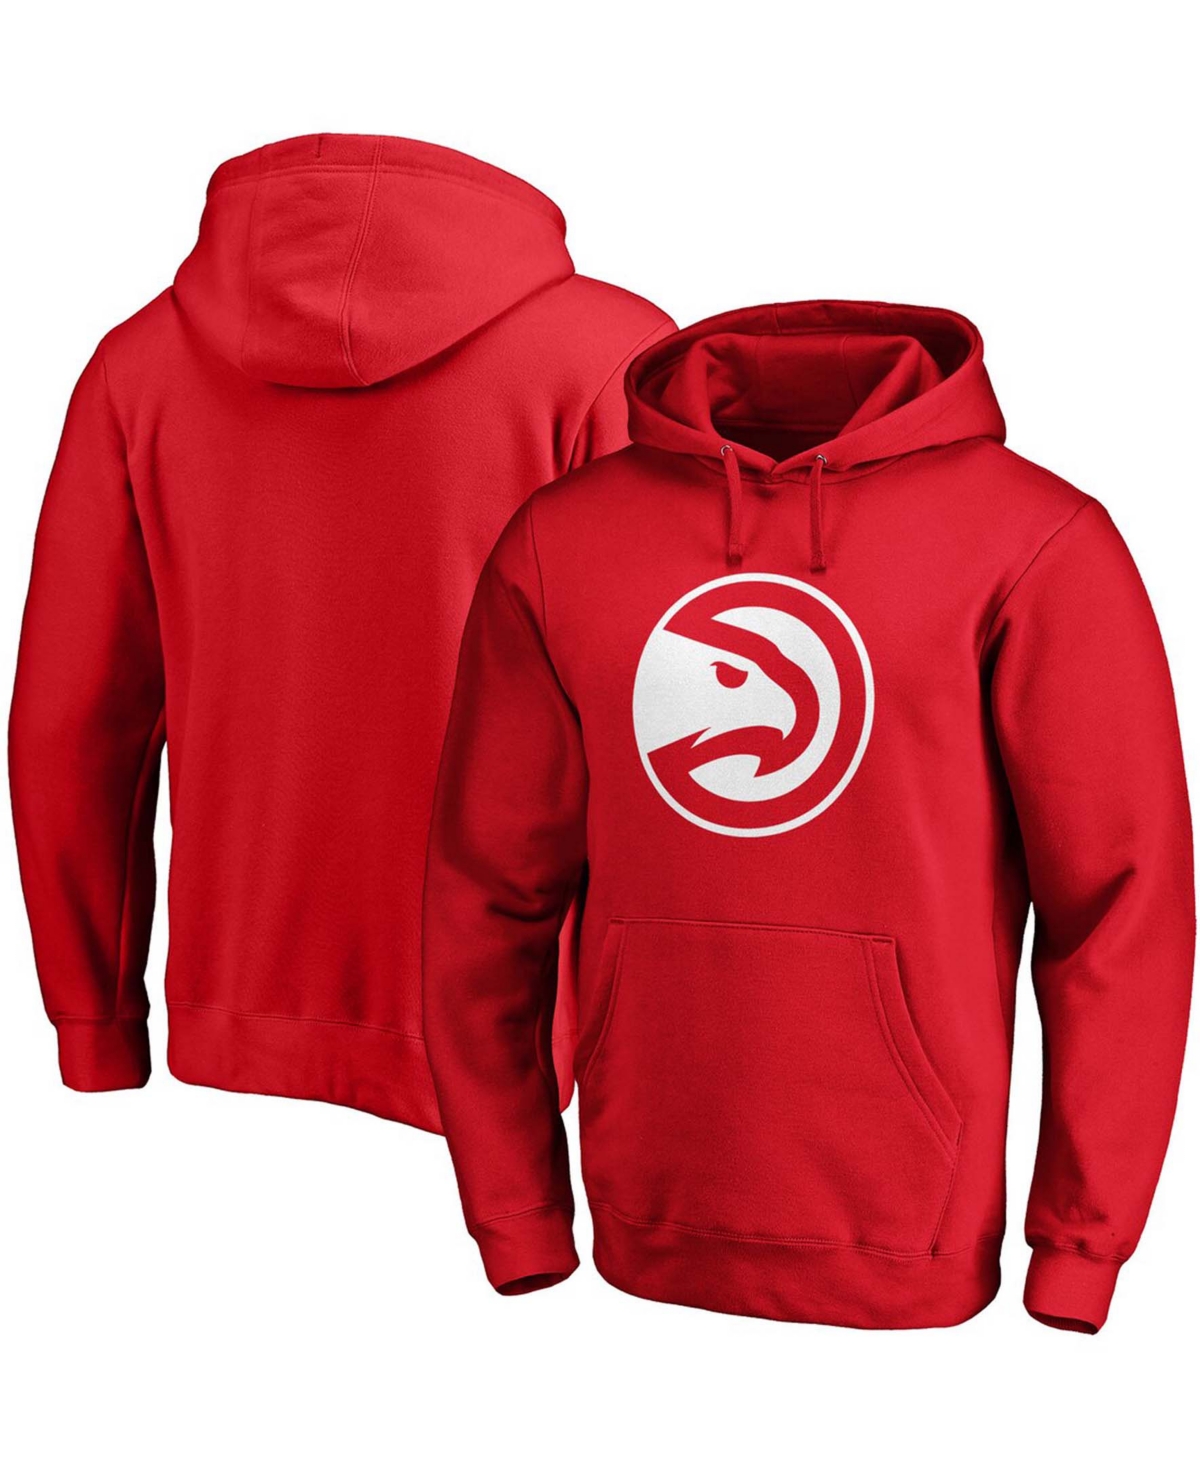 Shop Fanatics Men's Red Atlanta Hawks Primary Team Logo Pullover Hoodie